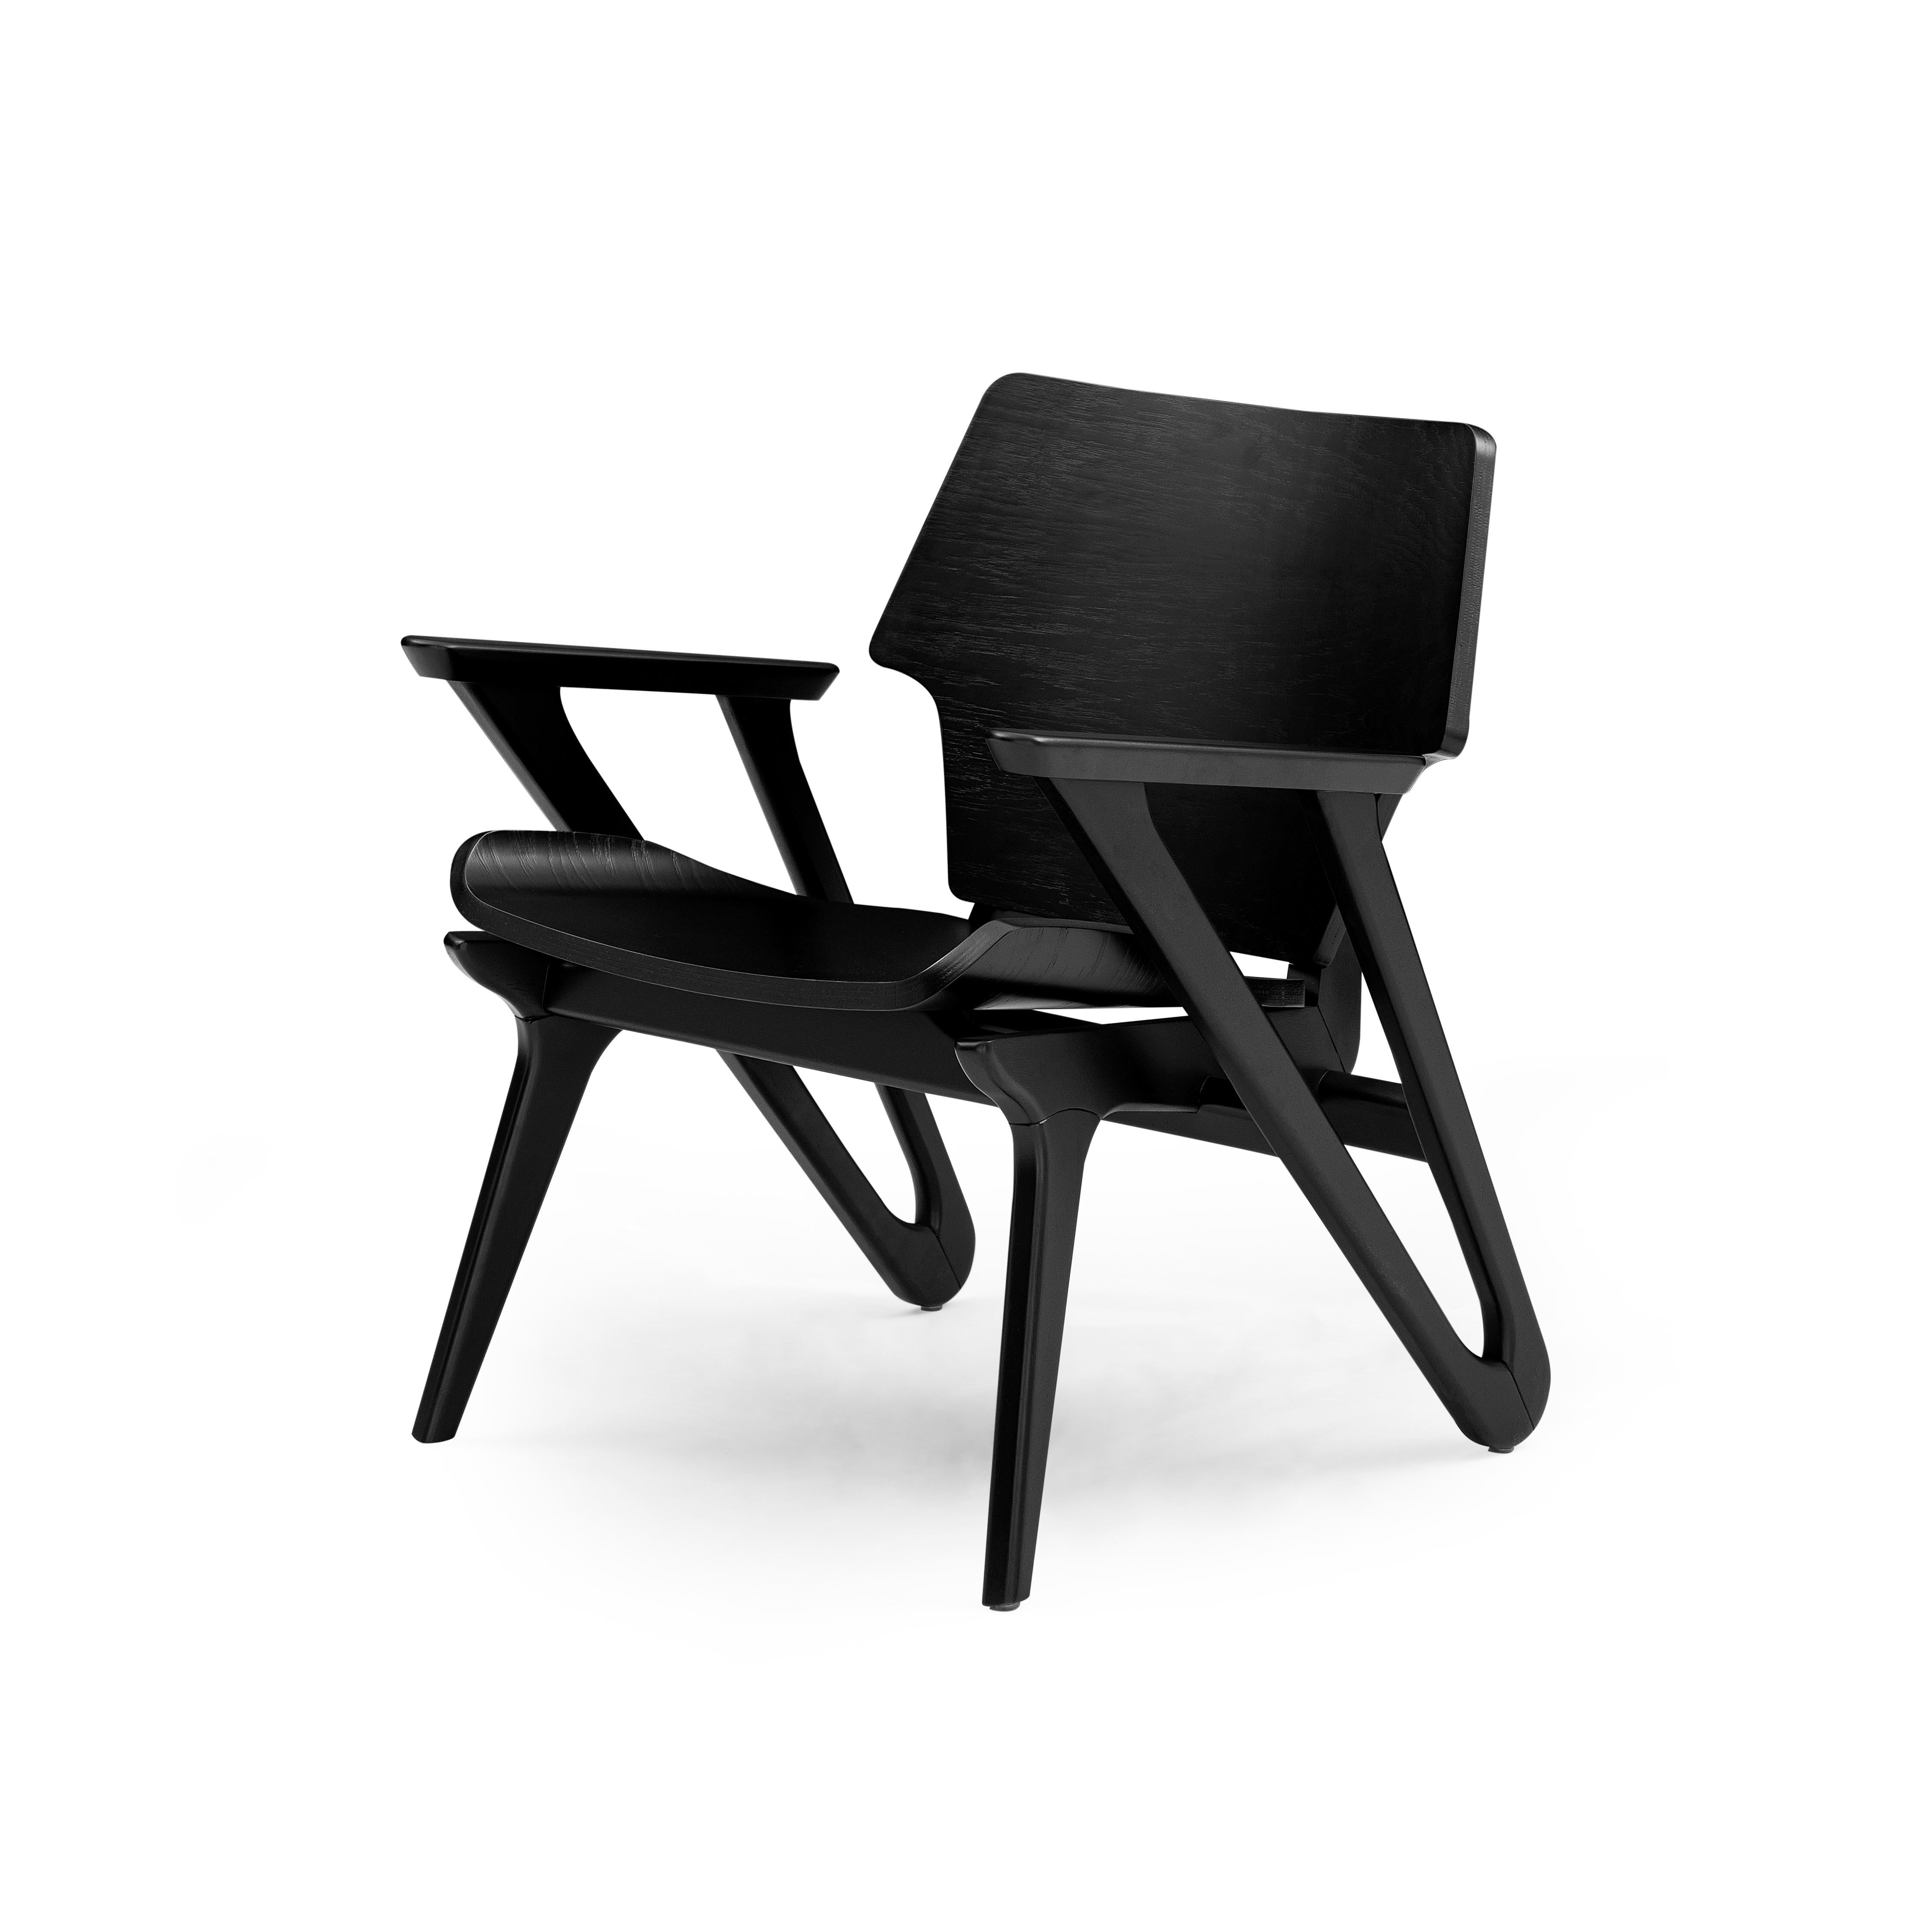 Dieser minimalistische Sessel Velo mit geformter Sitzfläche und Rückenlehne zeichnet sich durch ein einfaches und stromlinienförmiges Design aus, mit geometrischen Formen und einer geschwungenen Sitzfläche mit weichen und starken Ecken, die